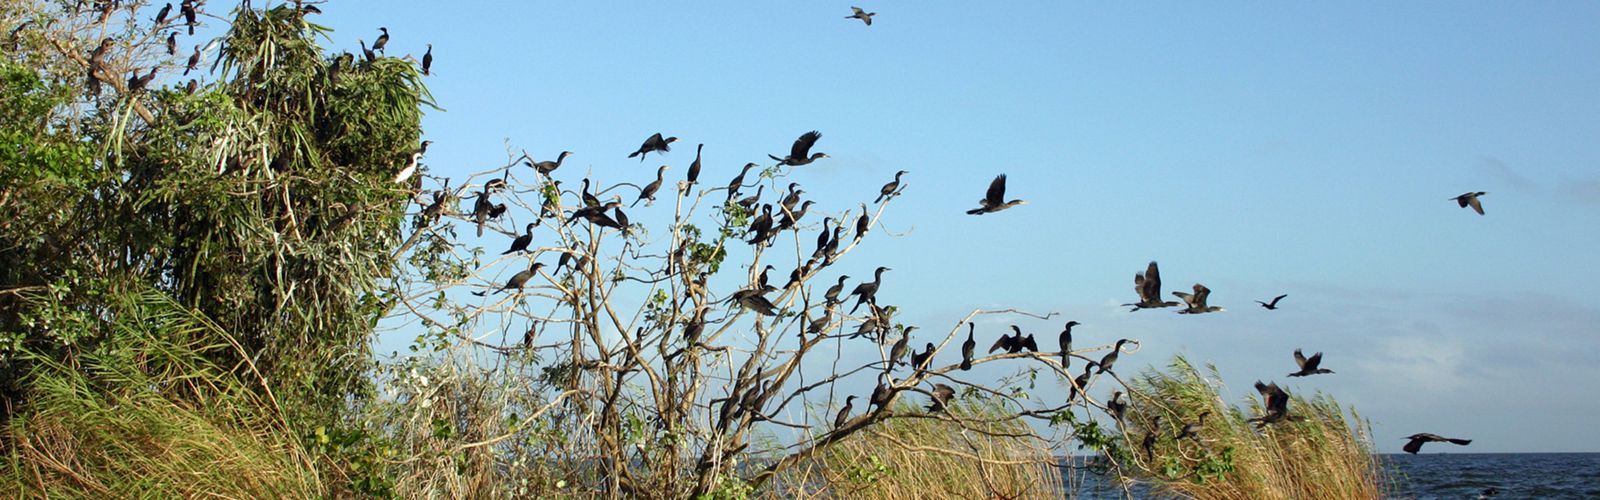 Las aves  se agrupan entre las ramas de los árboles en el lago de Nicaragua en el archipiélago de la isla de Solentiname en Nicaragua